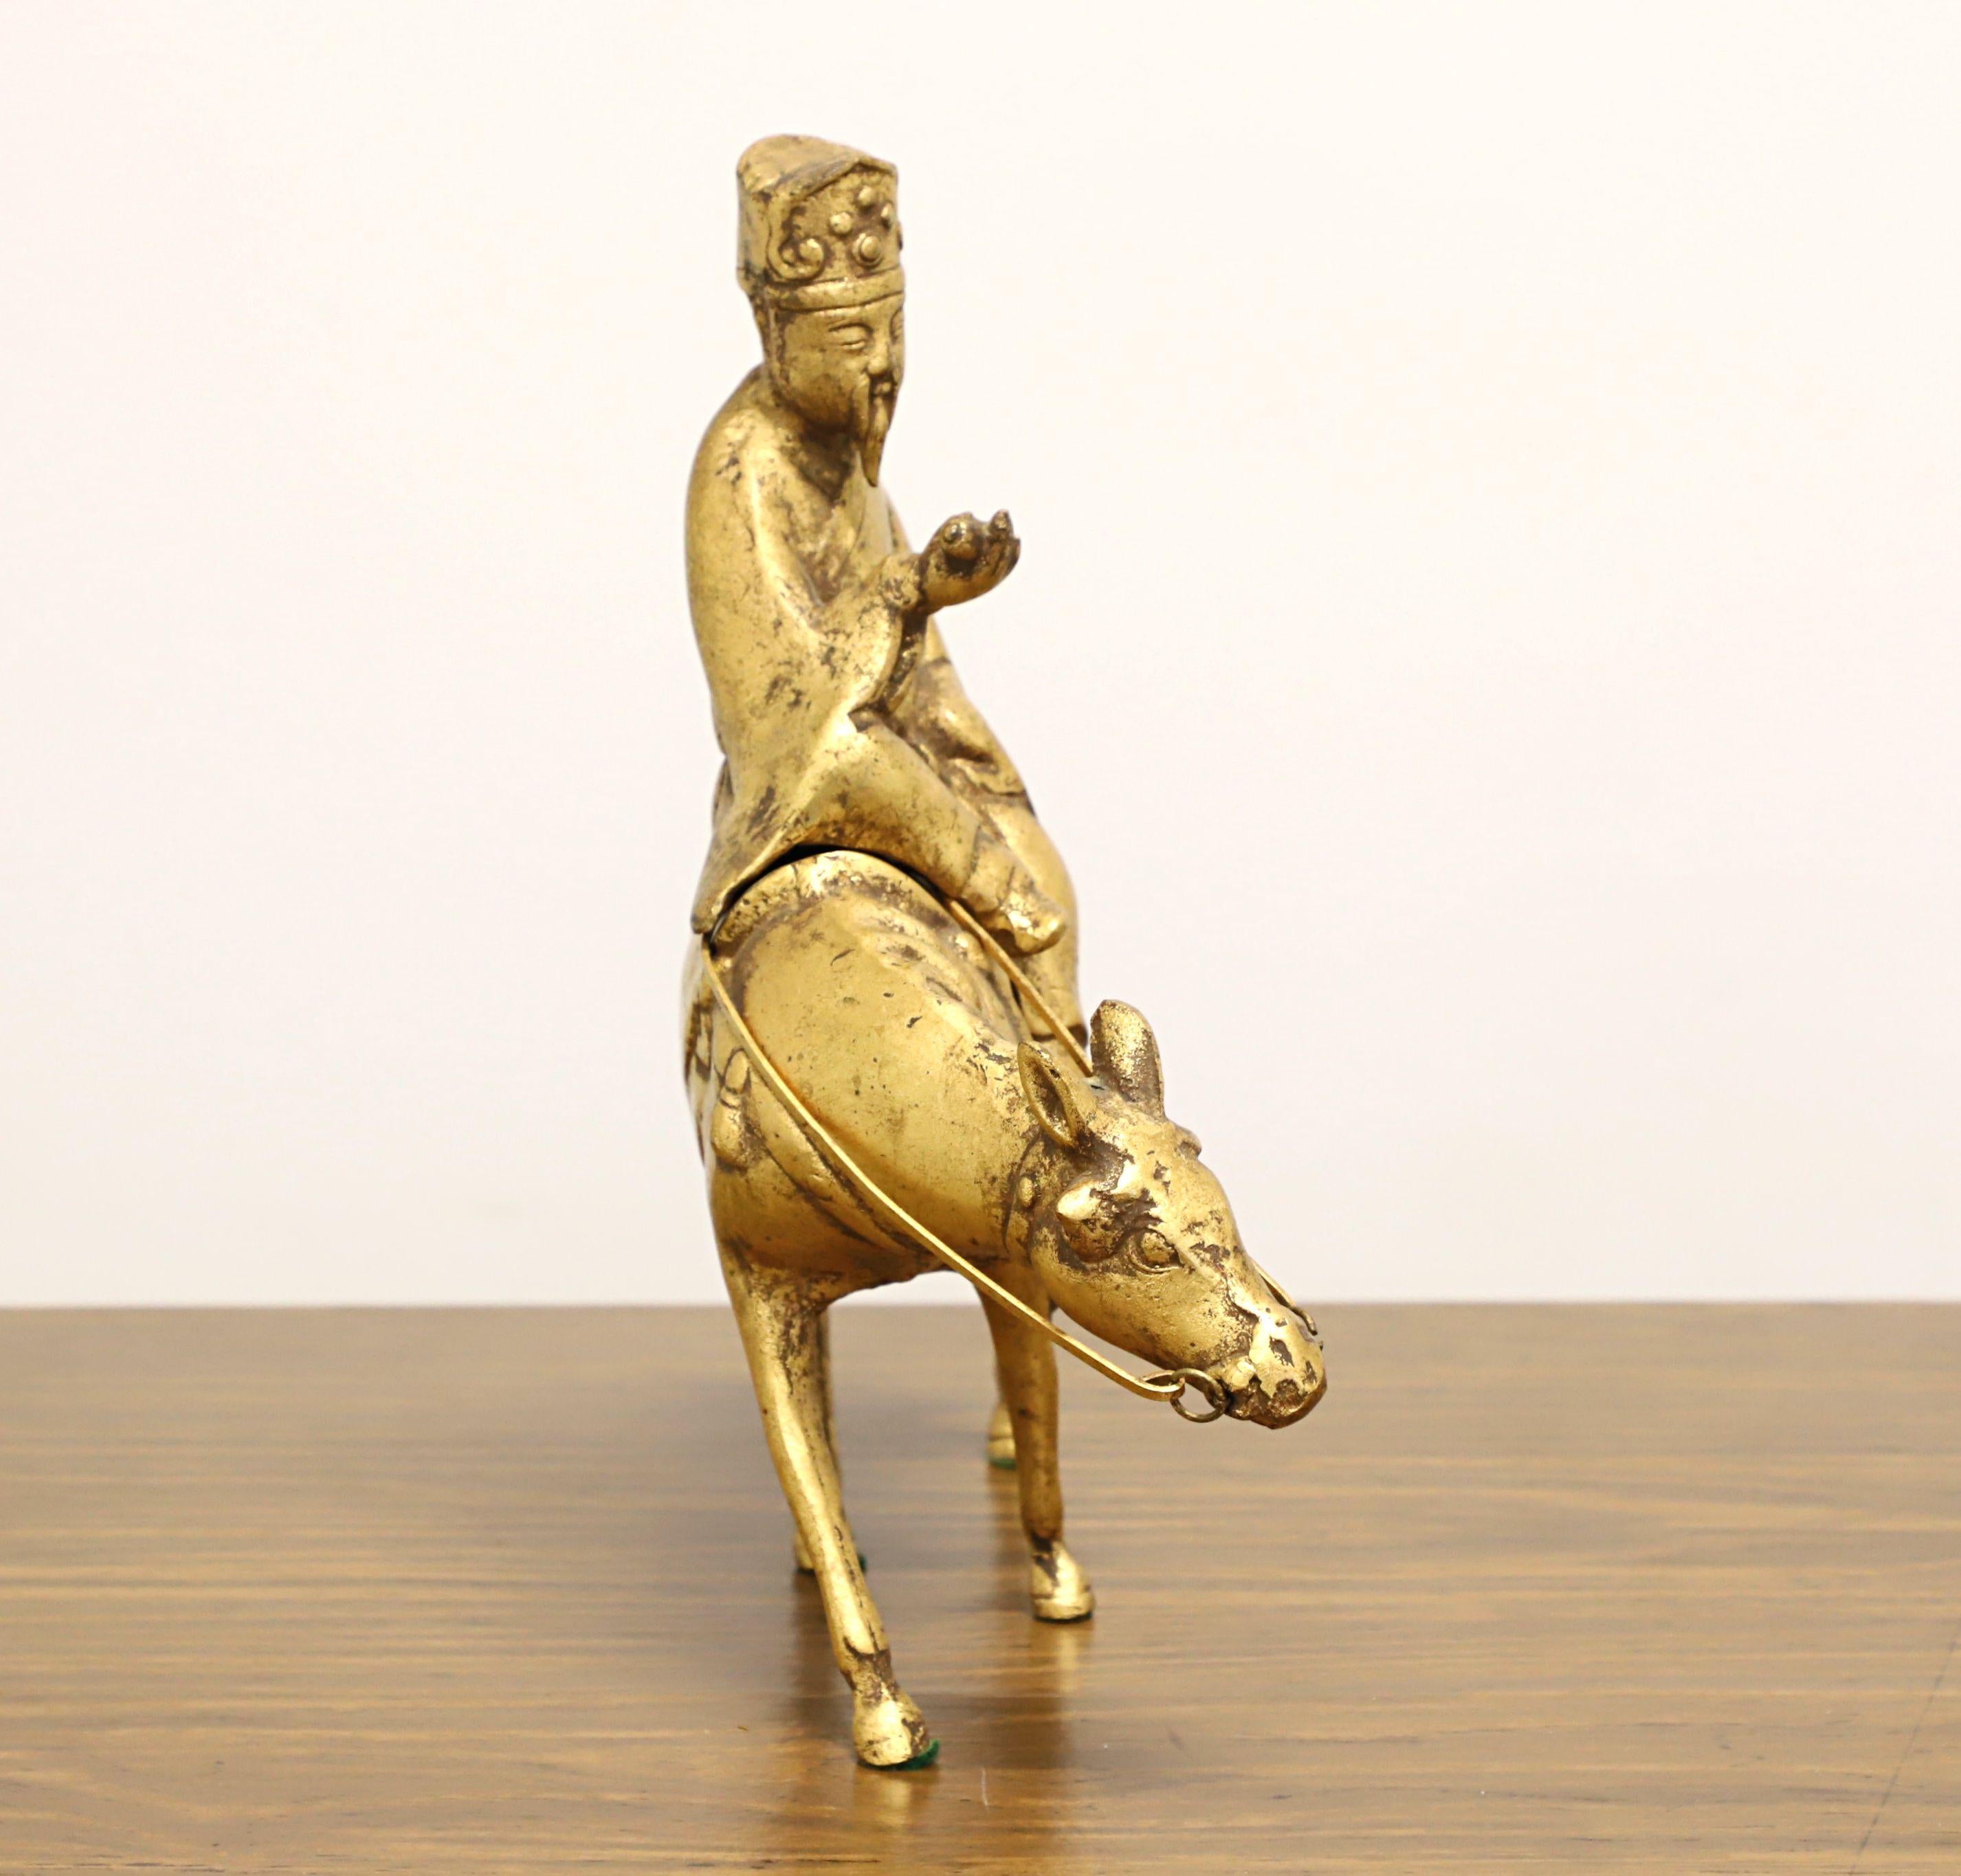 Brûleur d'encens chinois vintage de table, sculpté en bronze, représentant un érudit à cheval. Non signé, artiste inconnu. Bronze massif en deux parties, teinté de bronze et d'or. L'érudit se retire du cheval pour placer l'encens. Probablement